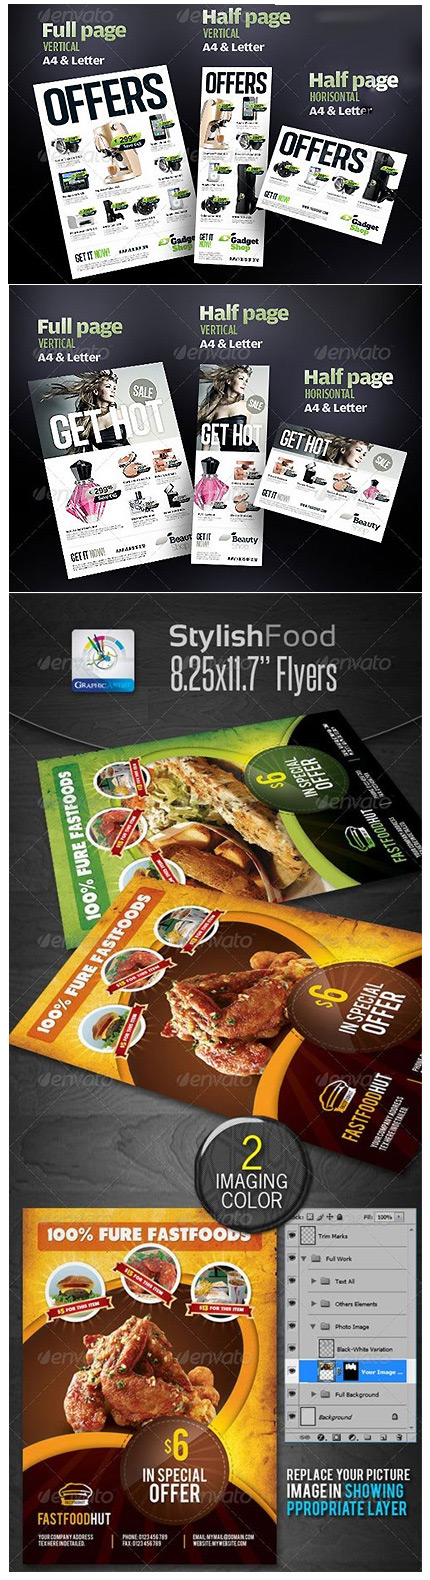 دانلود تصاویر لایه باز برگه تبلیغاتی غذا و محصولات متنوع (Stylish Foods And Product Flyers)